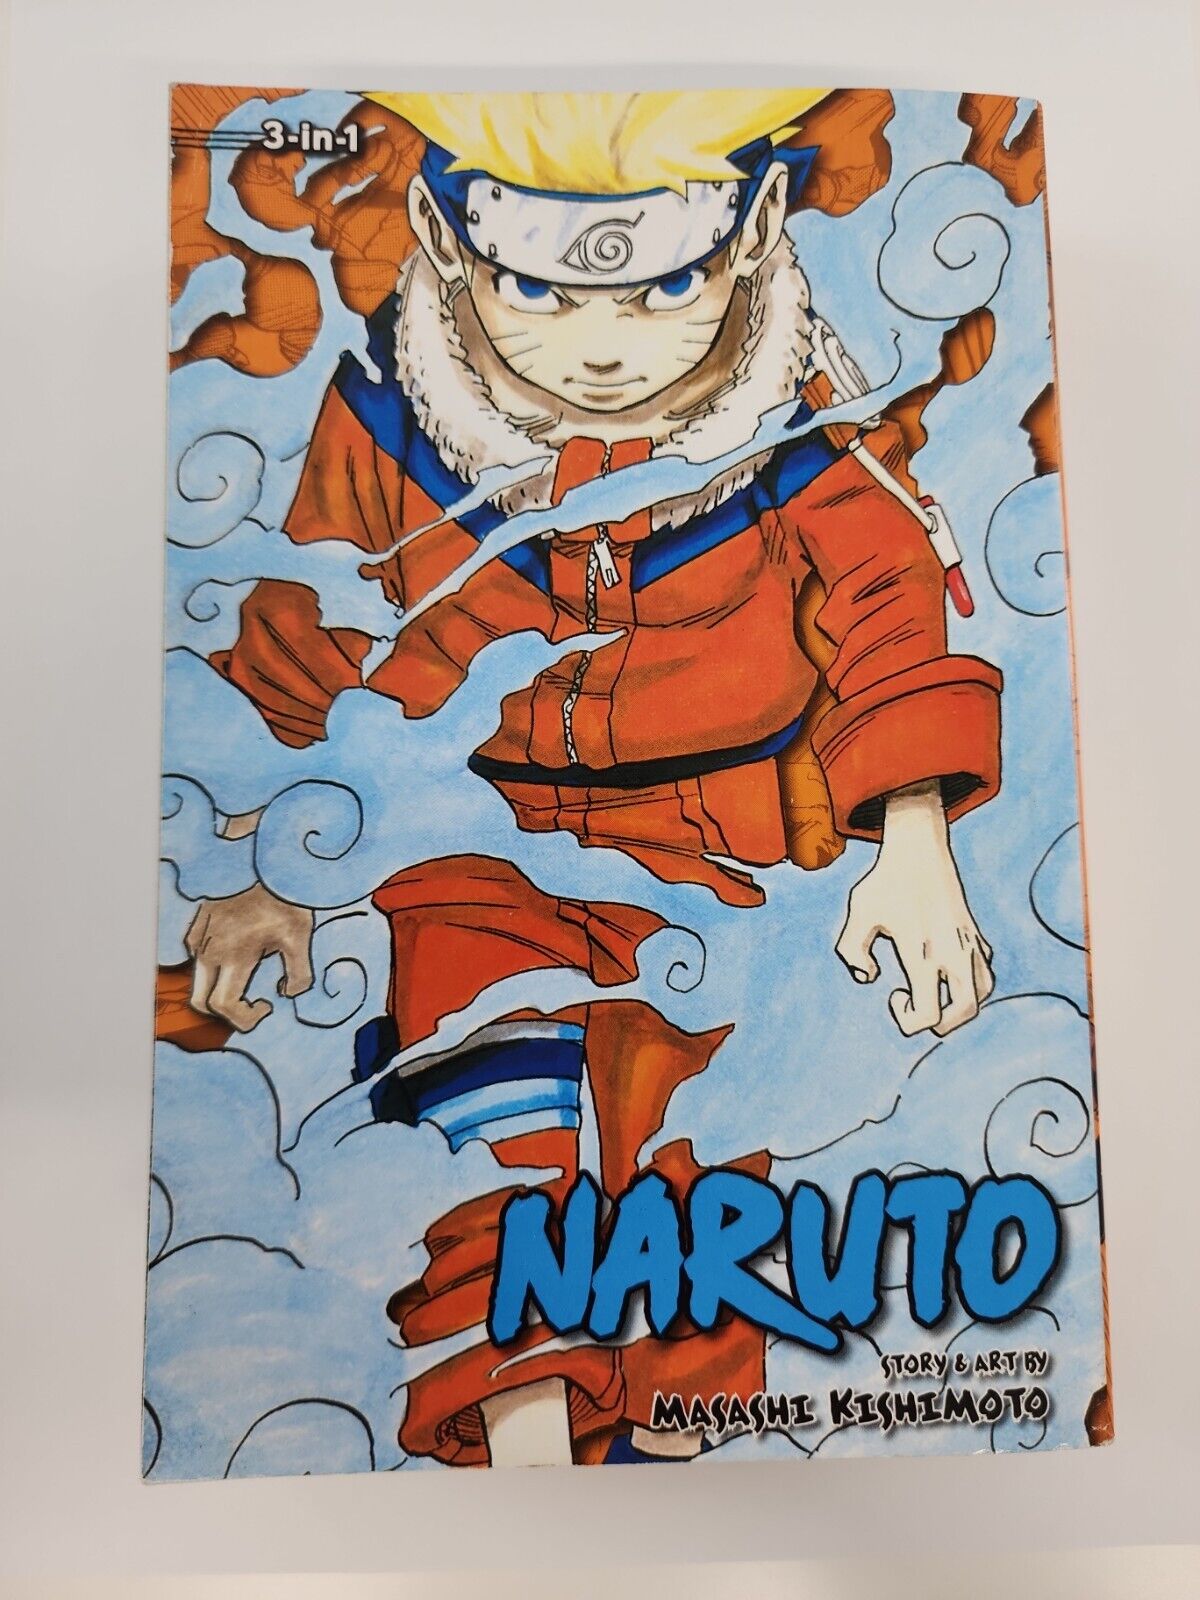 Naruto (3-In-1 Edition) Vol. 1-3 English Manga Masashi Kishimoto Trade Paperback